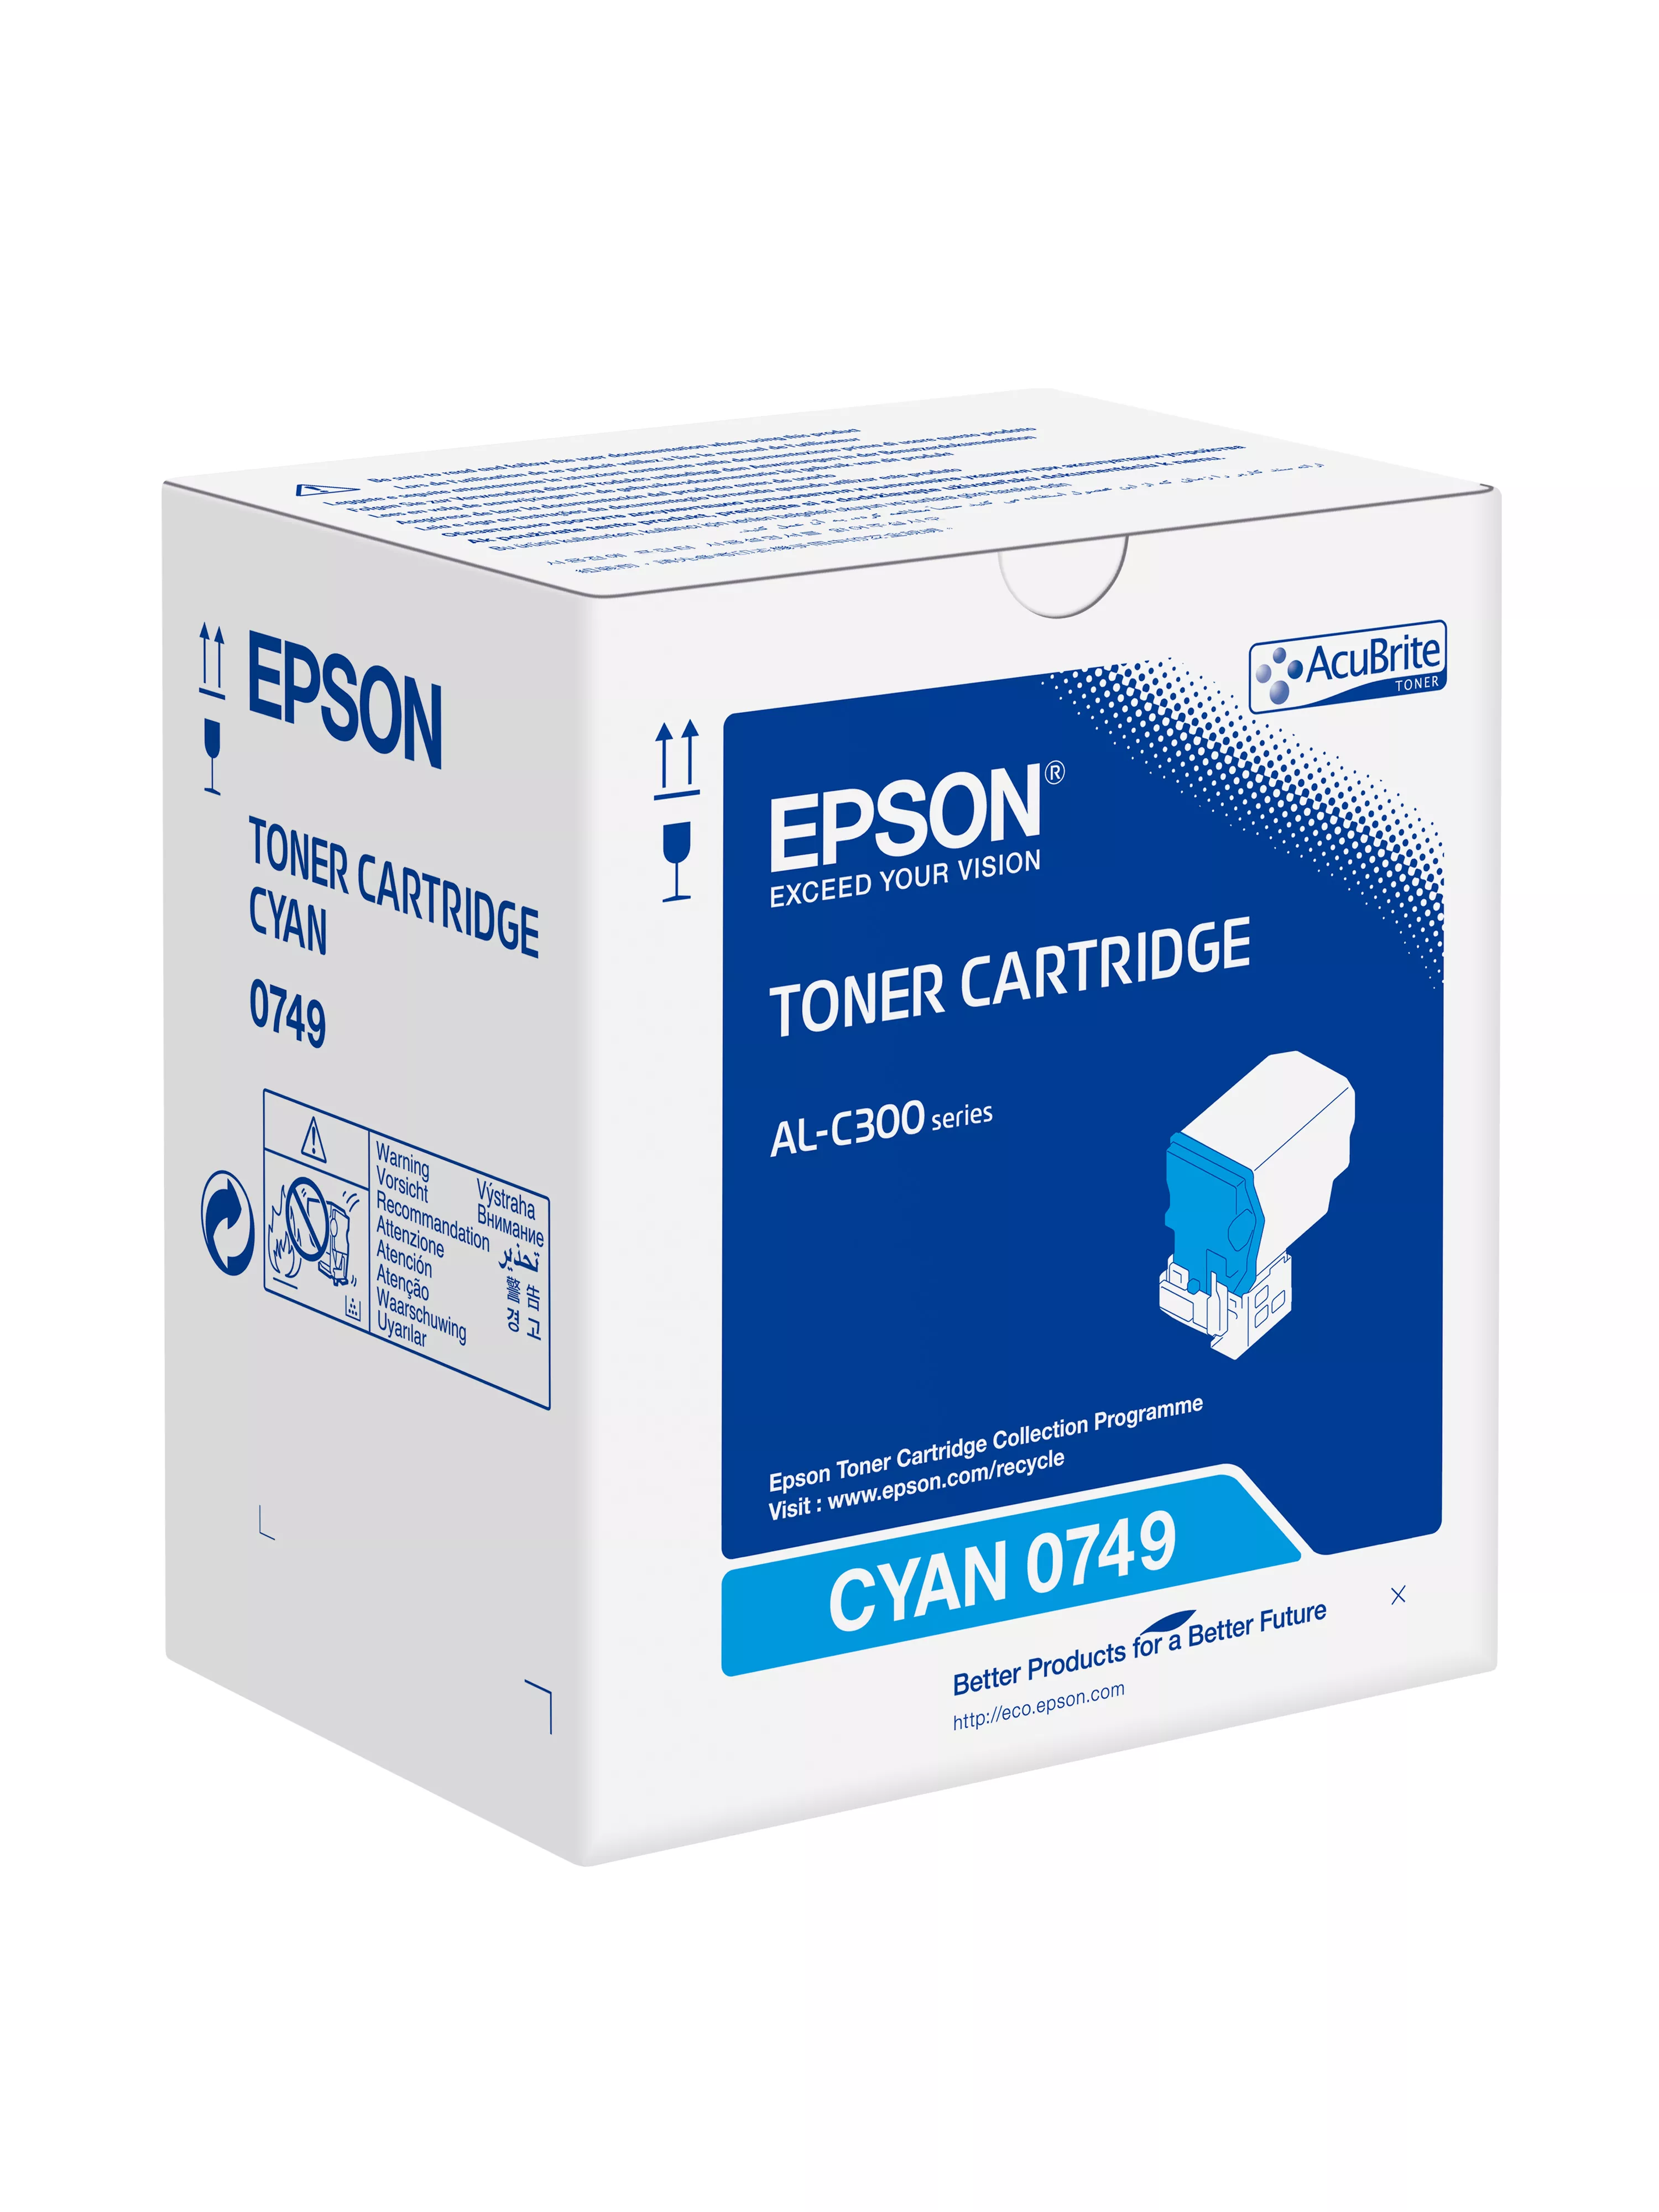 Vente EPSON AL-C300 cartouche de toner cyan capacité standard au meilleur prix